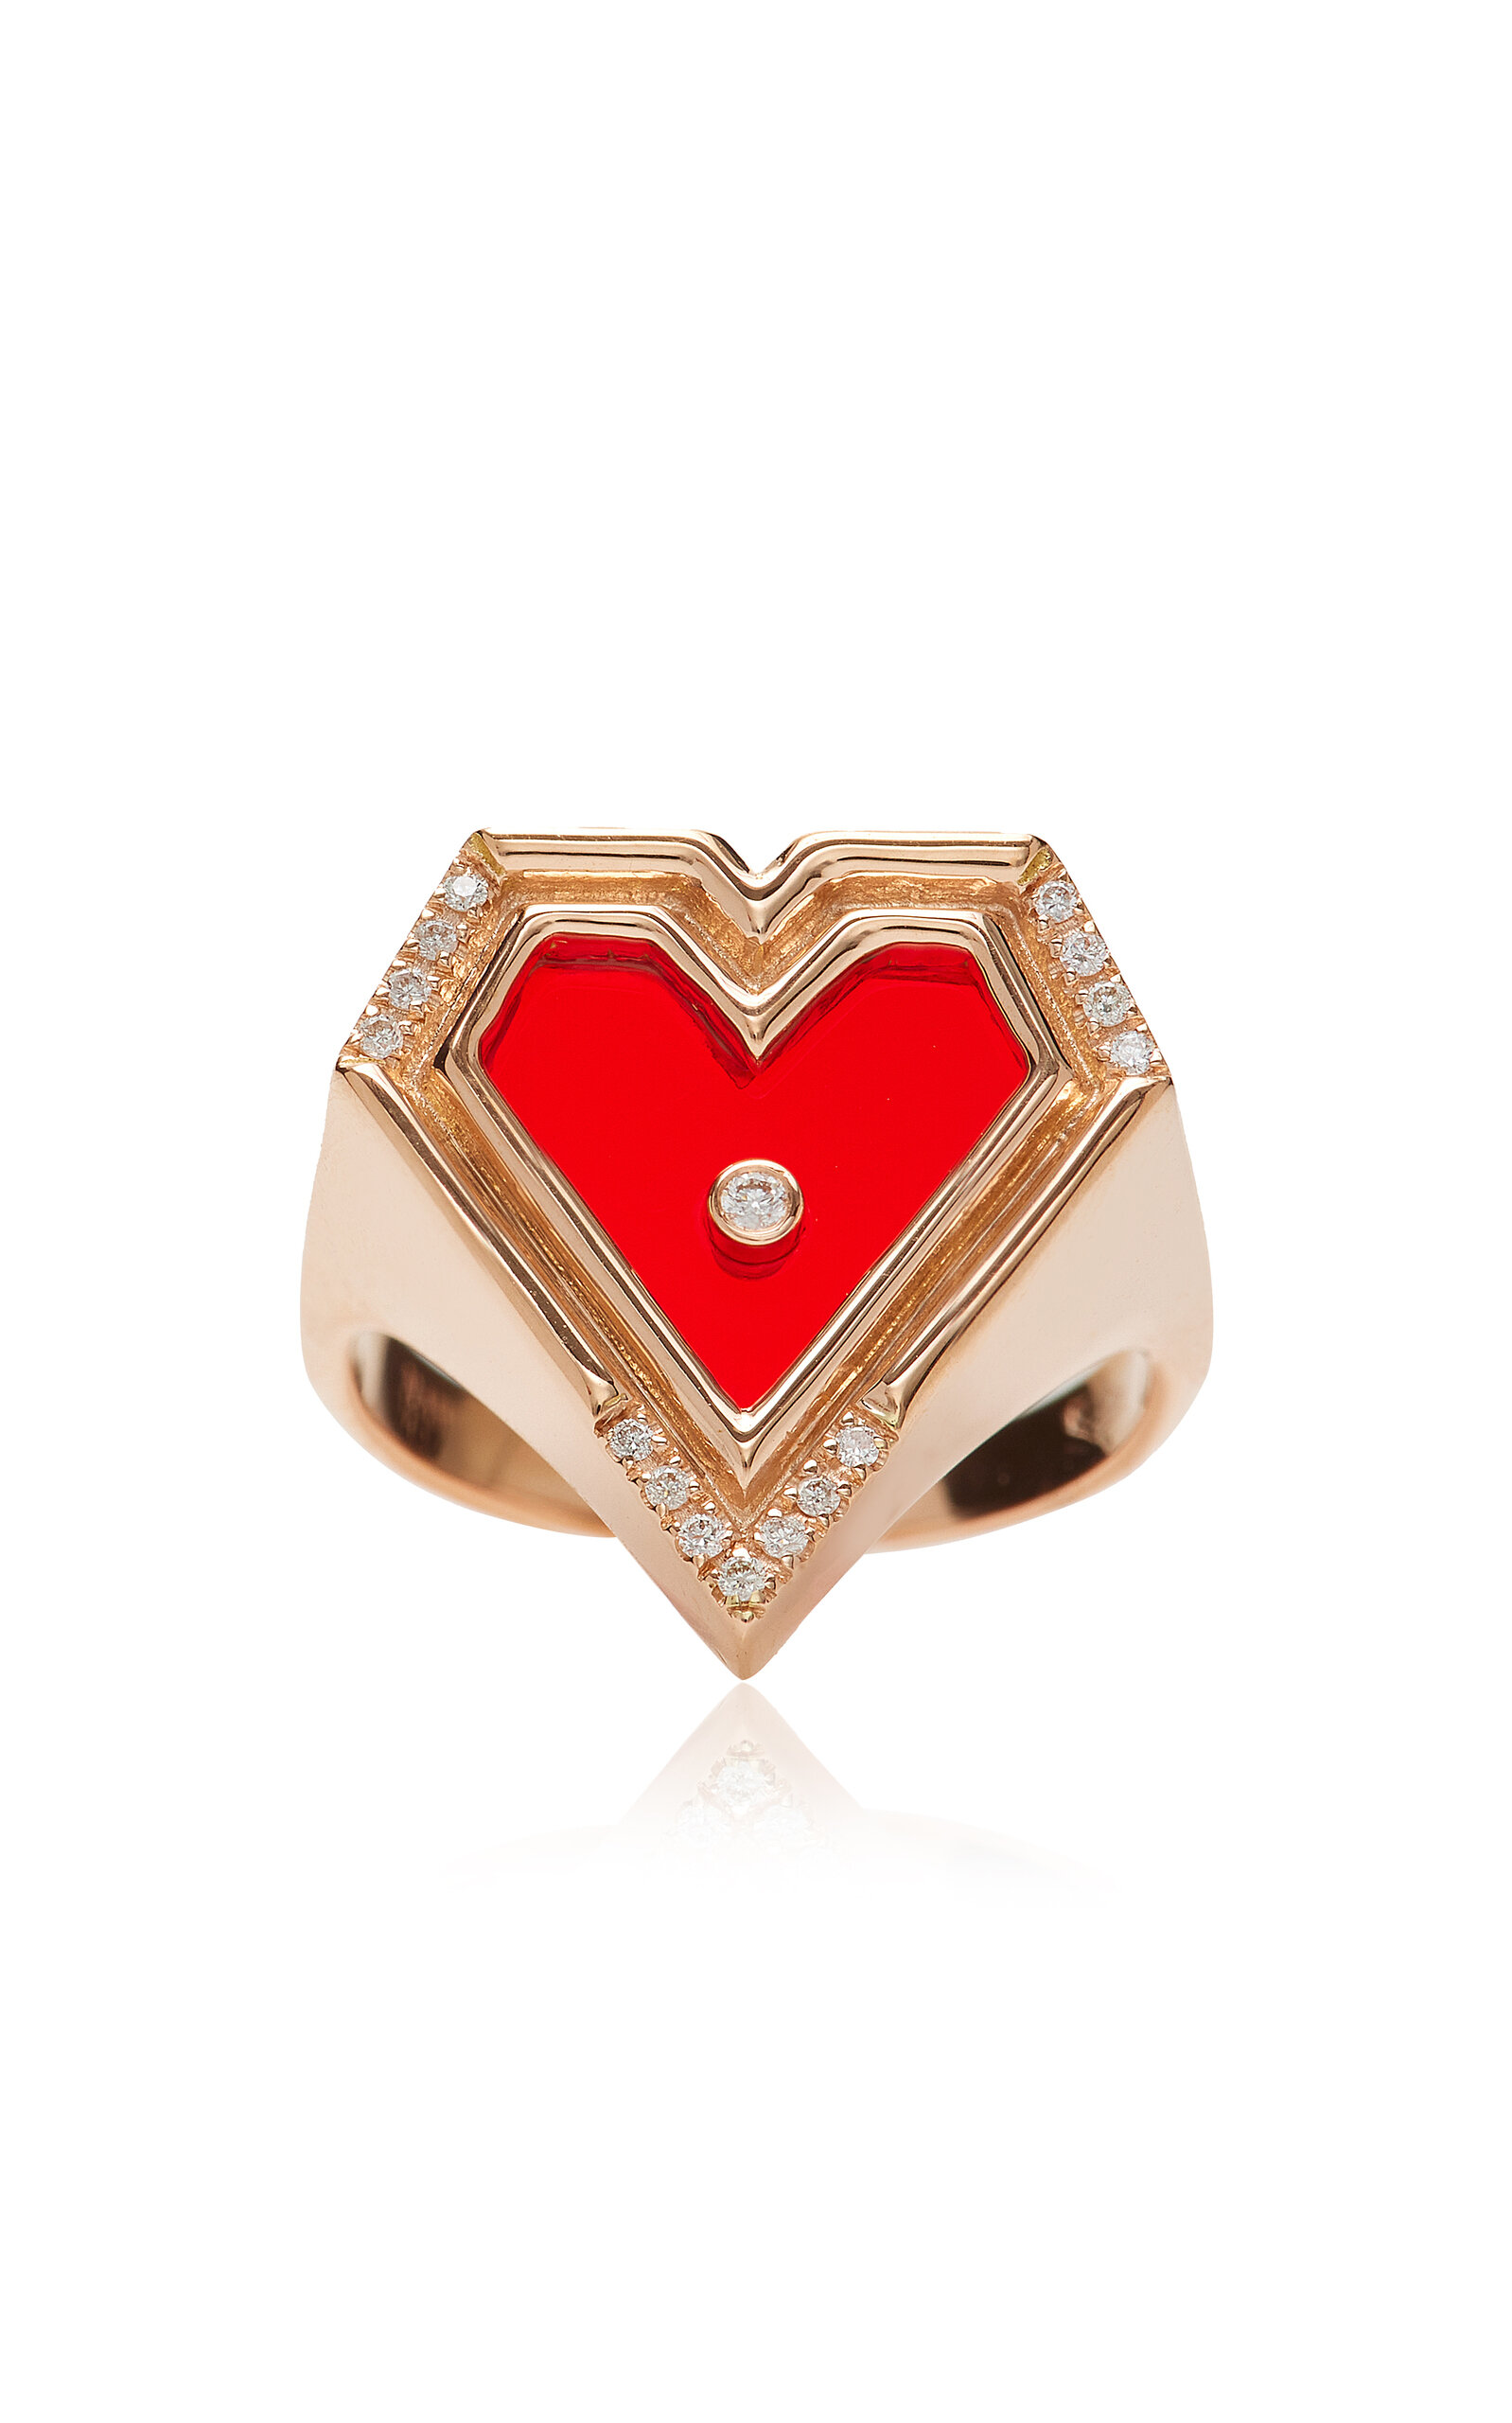 L'Atelier Nawbar Women's Super Heart 18K Rose Gold Agate Diamond Ring